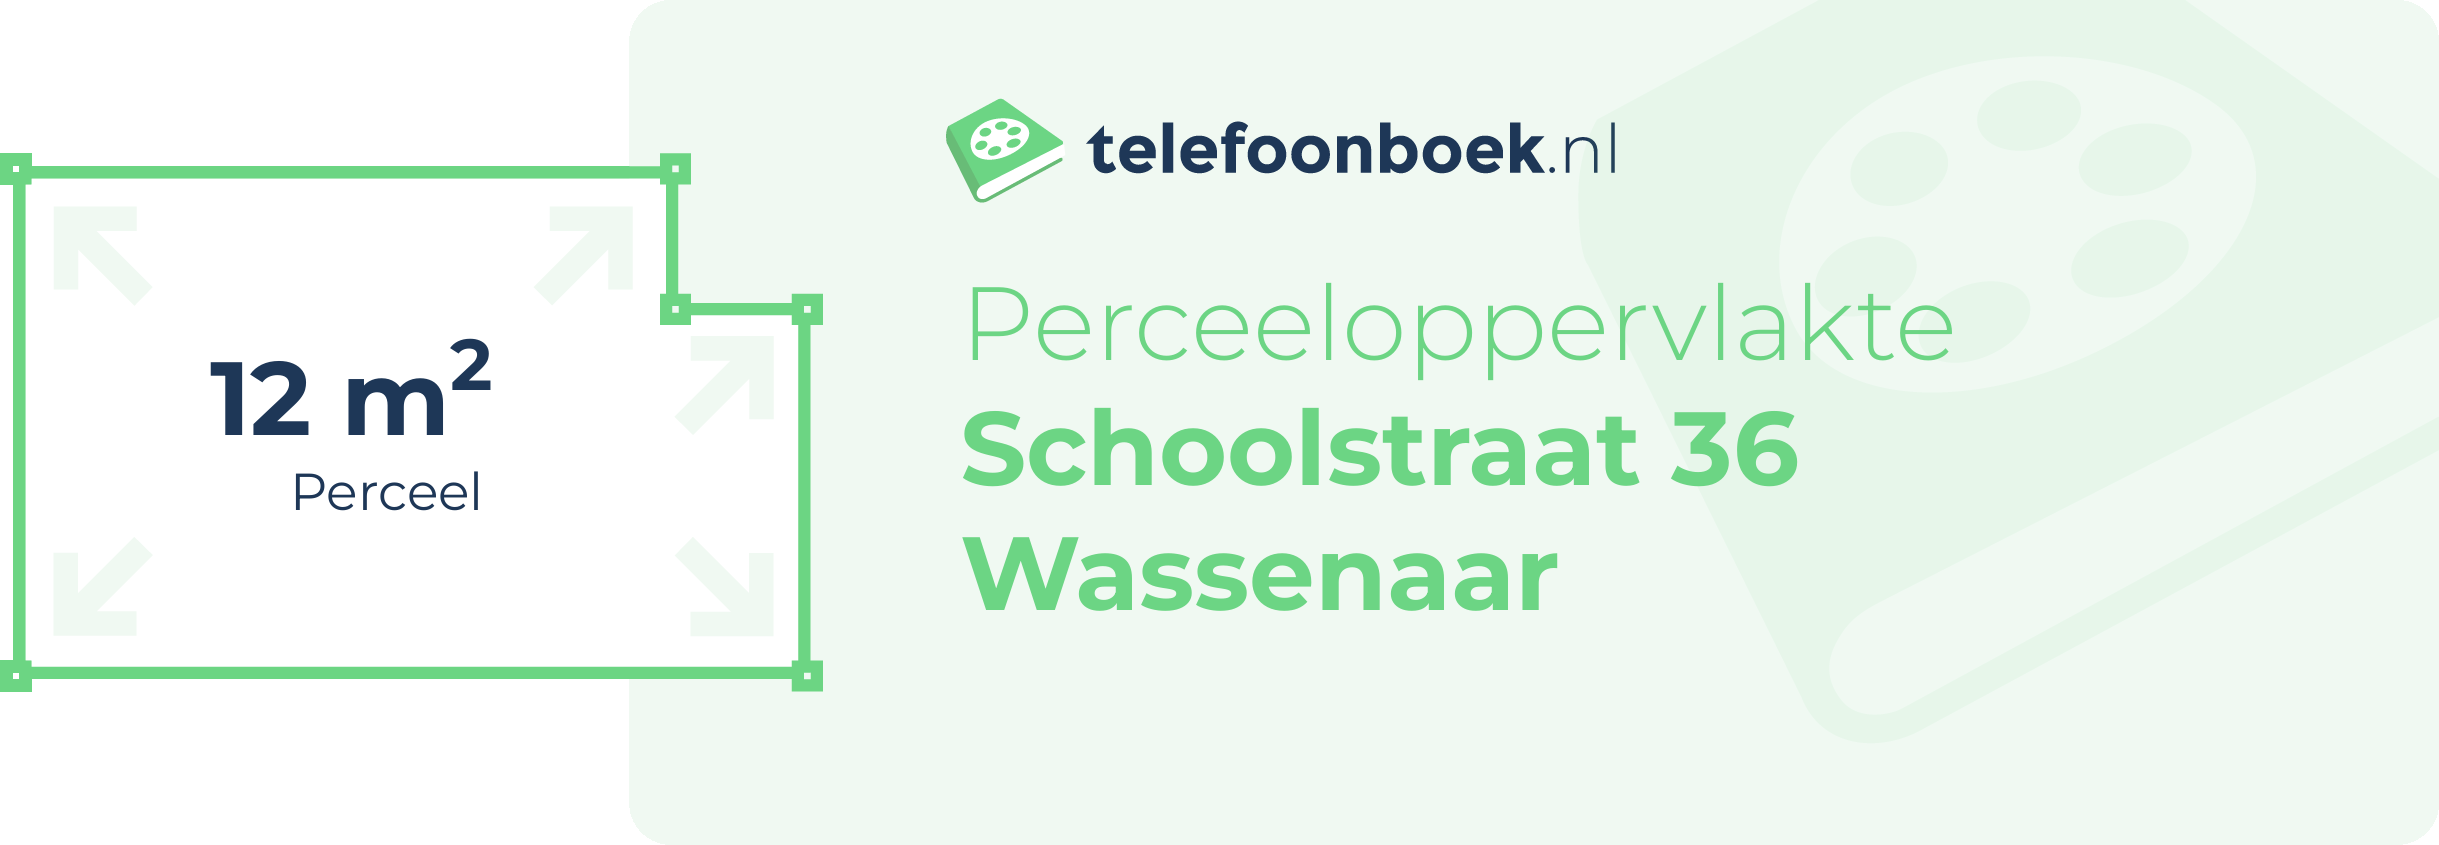 Perceeloppervlakte Schoolstraat 36 Wassenaar